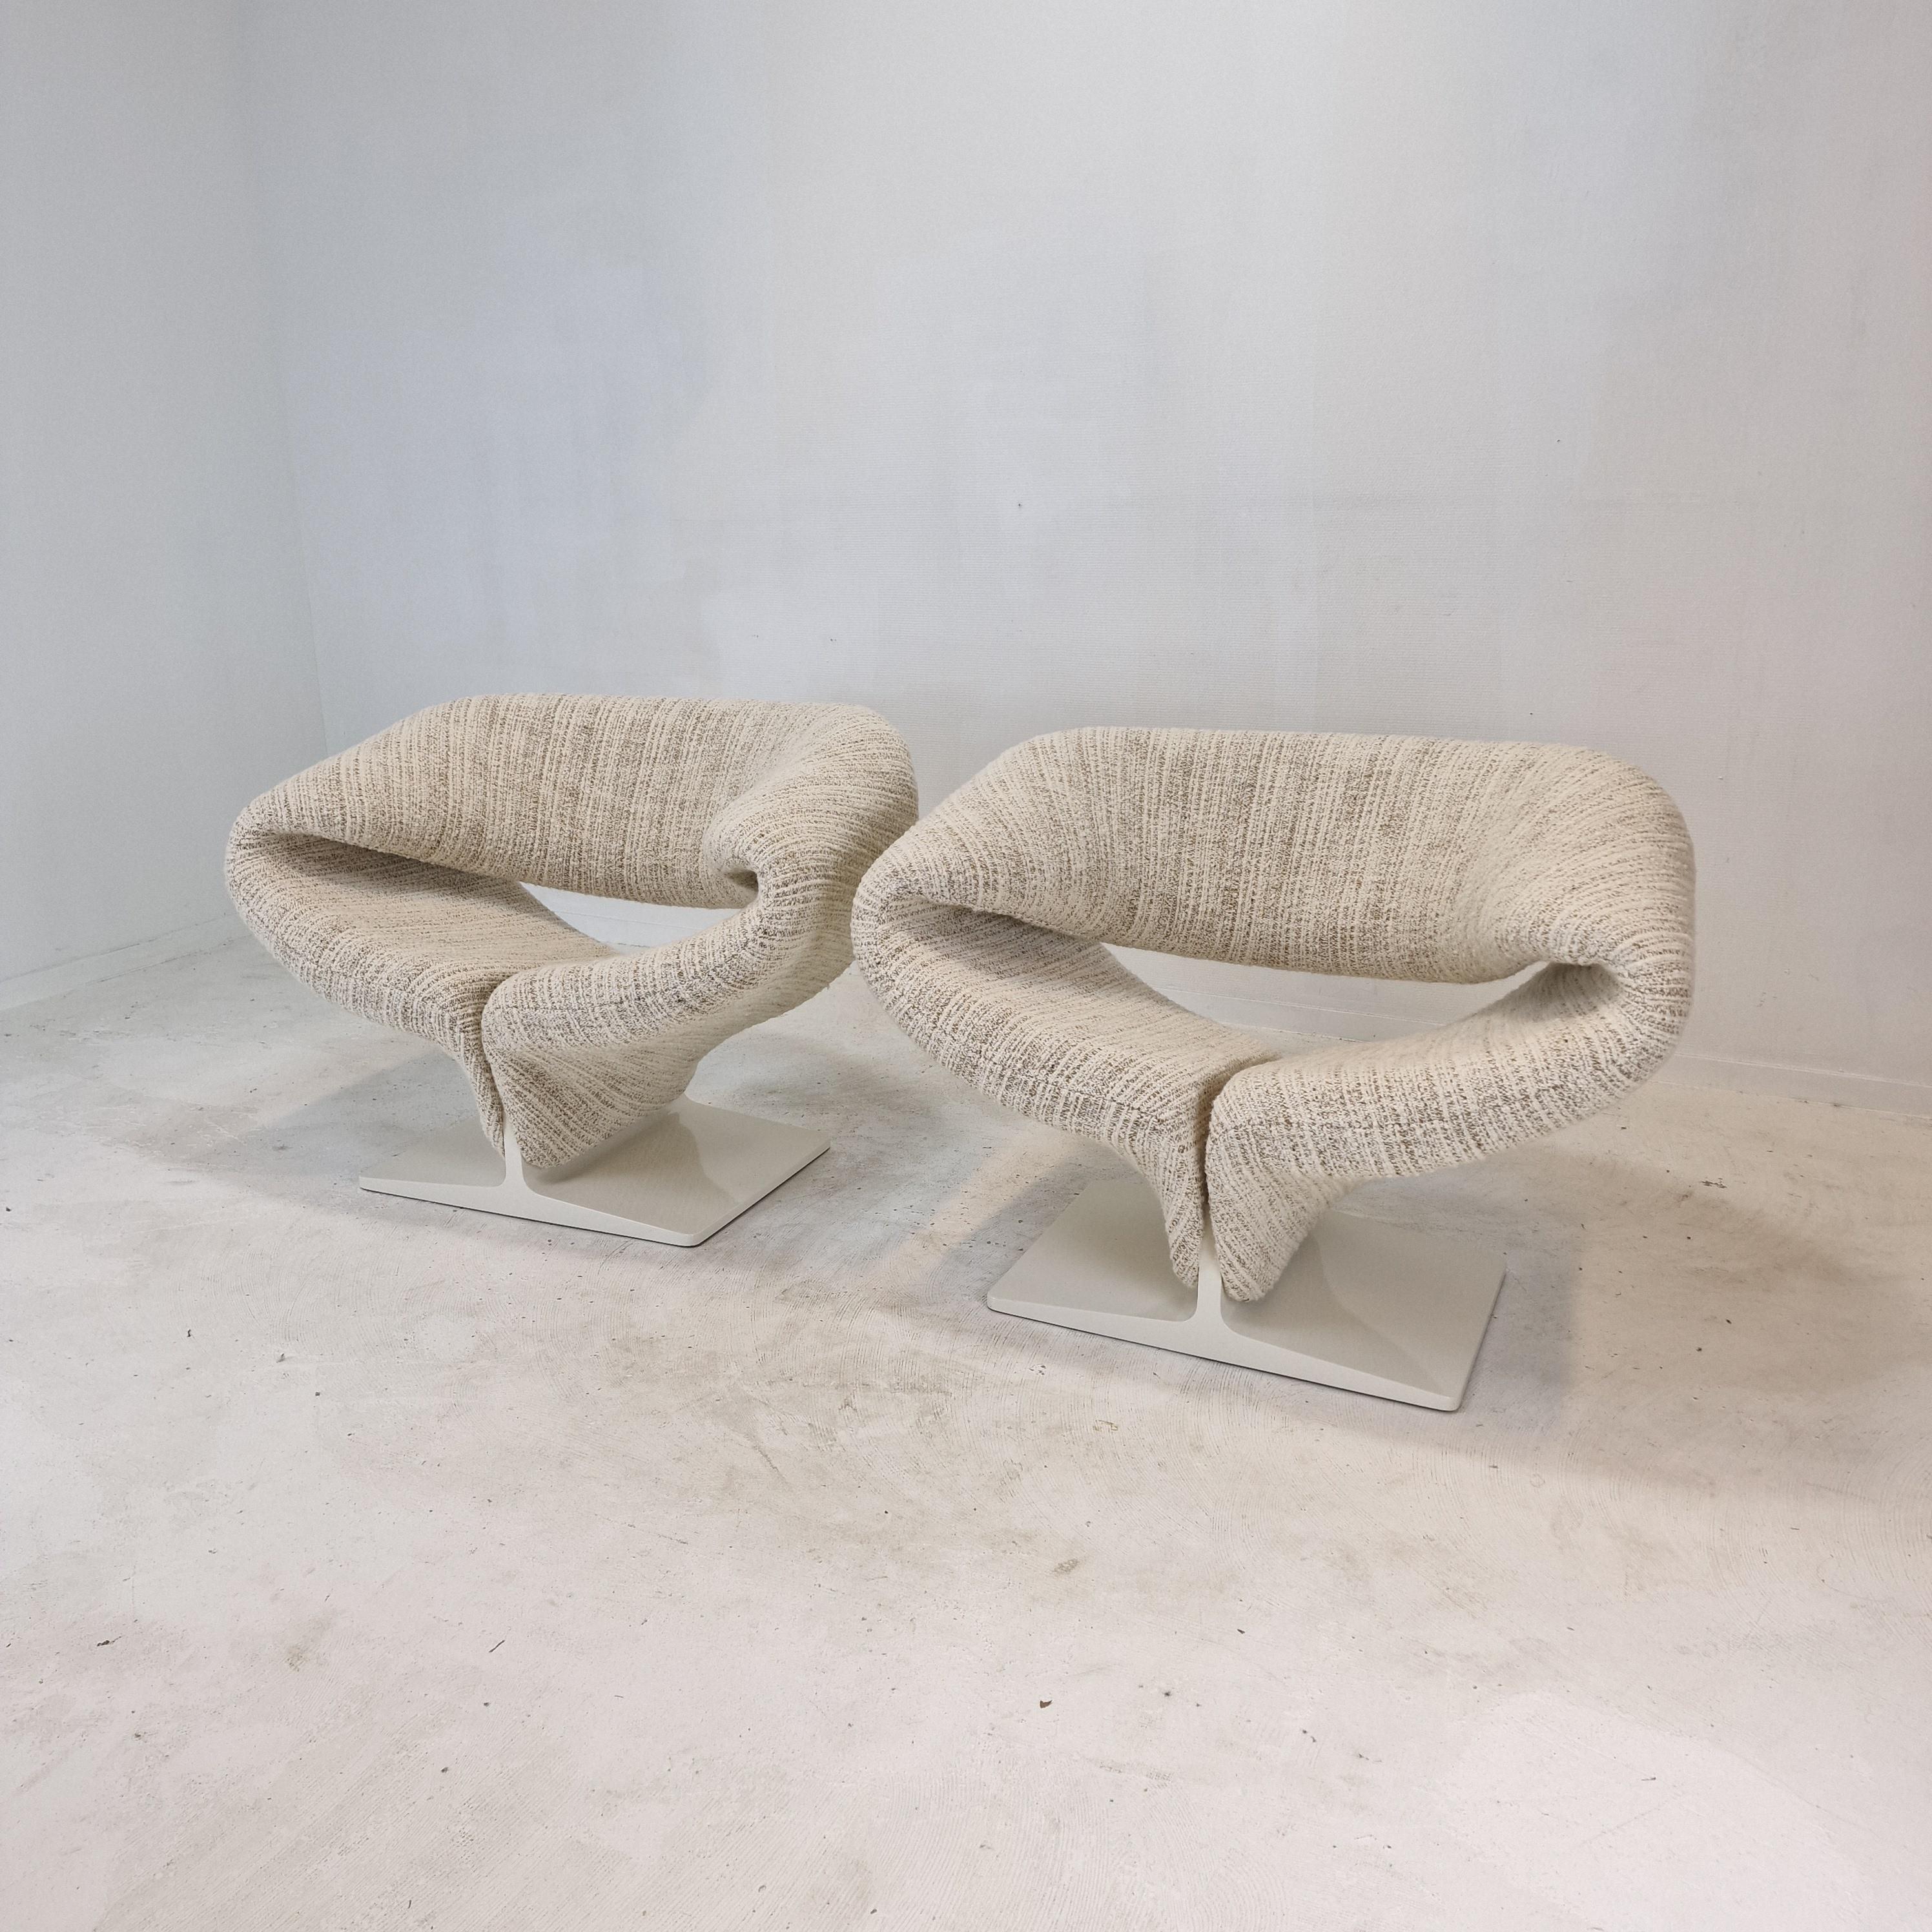 Superbe ensemble de chaises à ruban, conçu par le designer français Pierre Paulin dans les années 60. 
Cet ensemble original a été produit dans les années 60 par Artifort, aux Pays-Bas. 
Le Ribbon Chair est une œuvre d'art et il est incroyablement